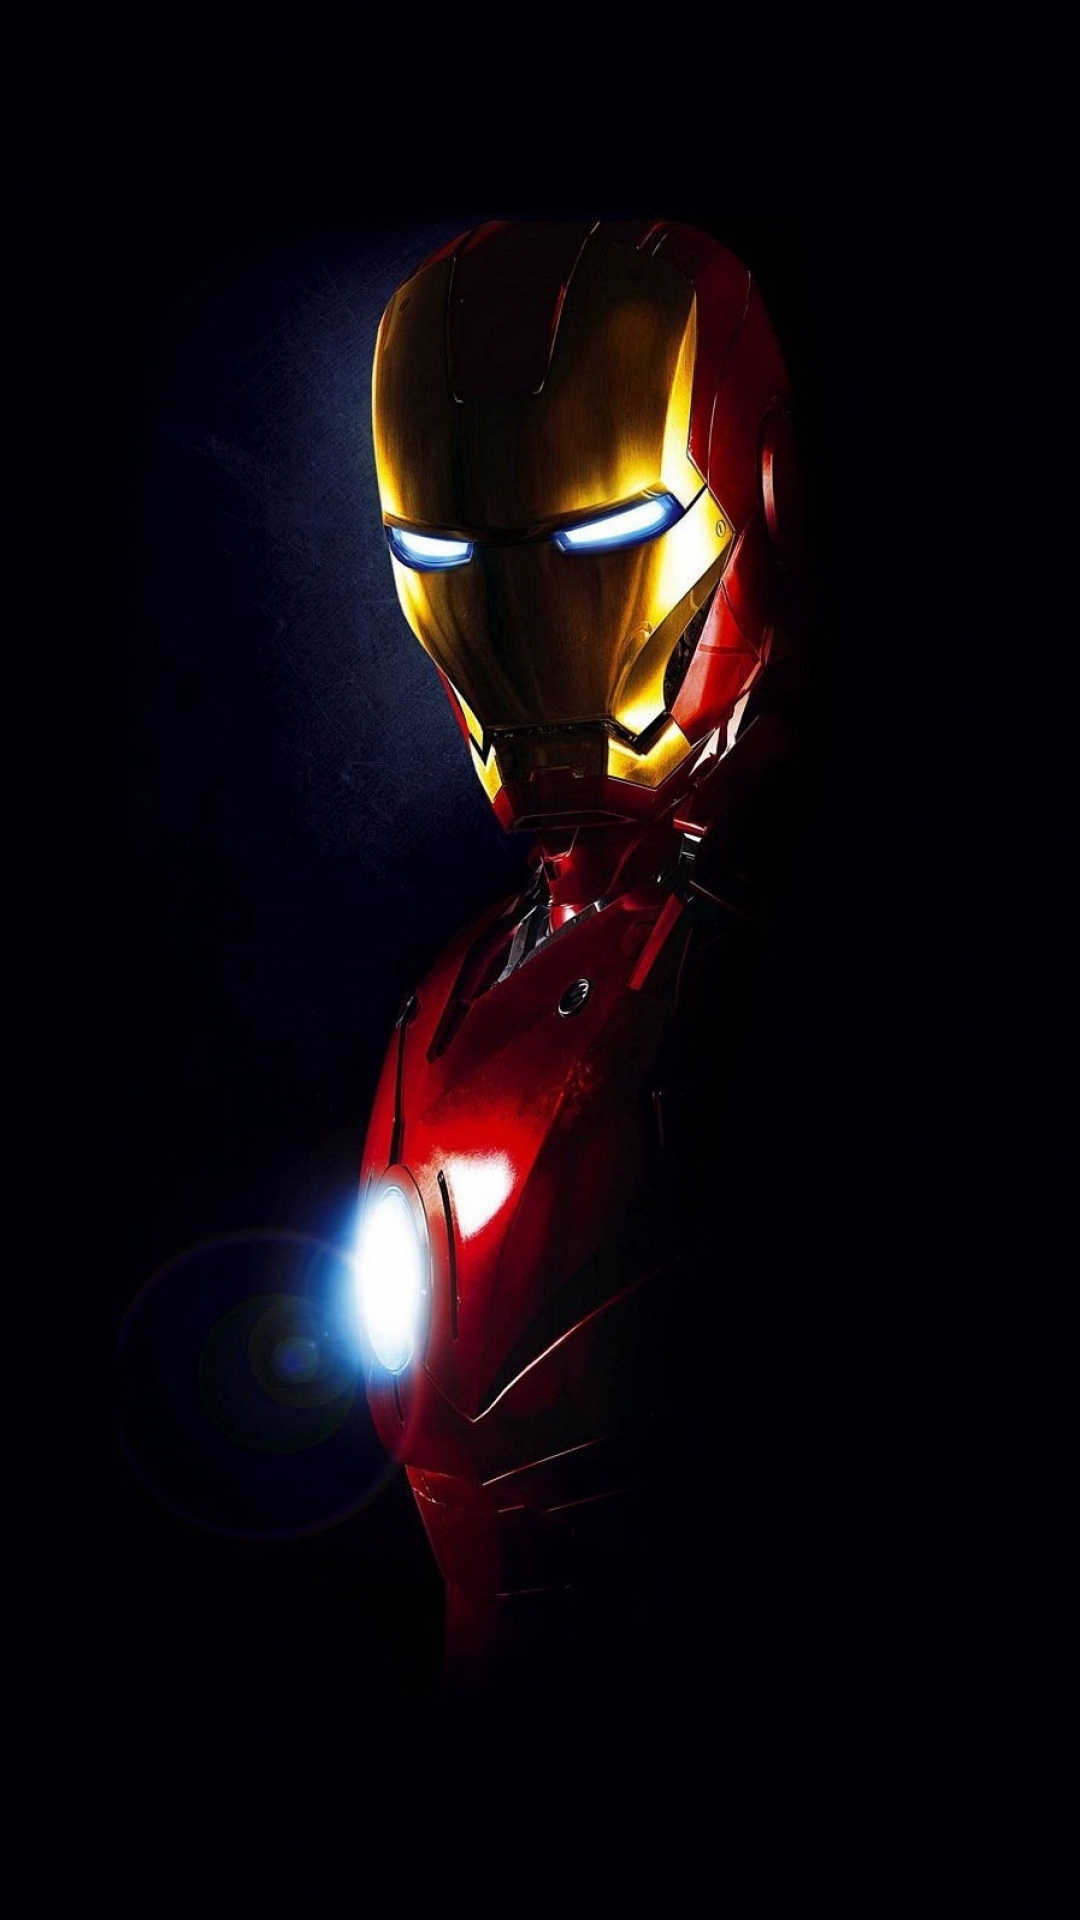 Hình chibi Iron Man là sự kết hợp giữa sự dễ thương và phiêu lưu. Với hình ảnh nhỏ xinh đầy màu sắc của nhân vật siêu anh hùng yêu thích, bạn sẽ thấy rõ được tính cách vui nhộn và đáng yêu của Iron Man. Hình chibi Iron Man sẽ giúp bạn cảm thấy trẻ trung và hứng khởi trong cuộc sống hàng ngày.